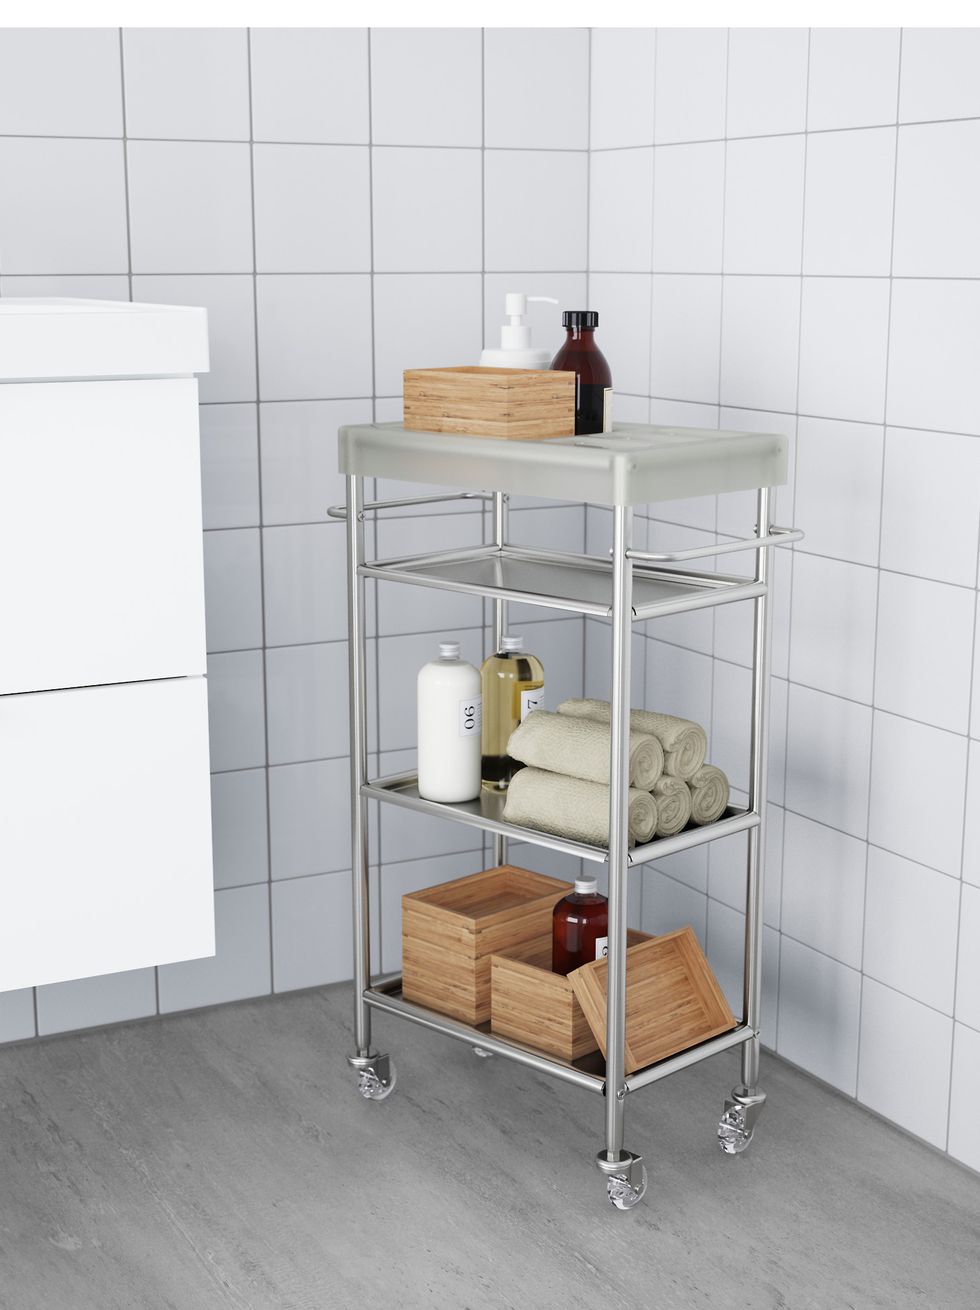 Carritos de Cocina y Baño - Compra Online - IKEA